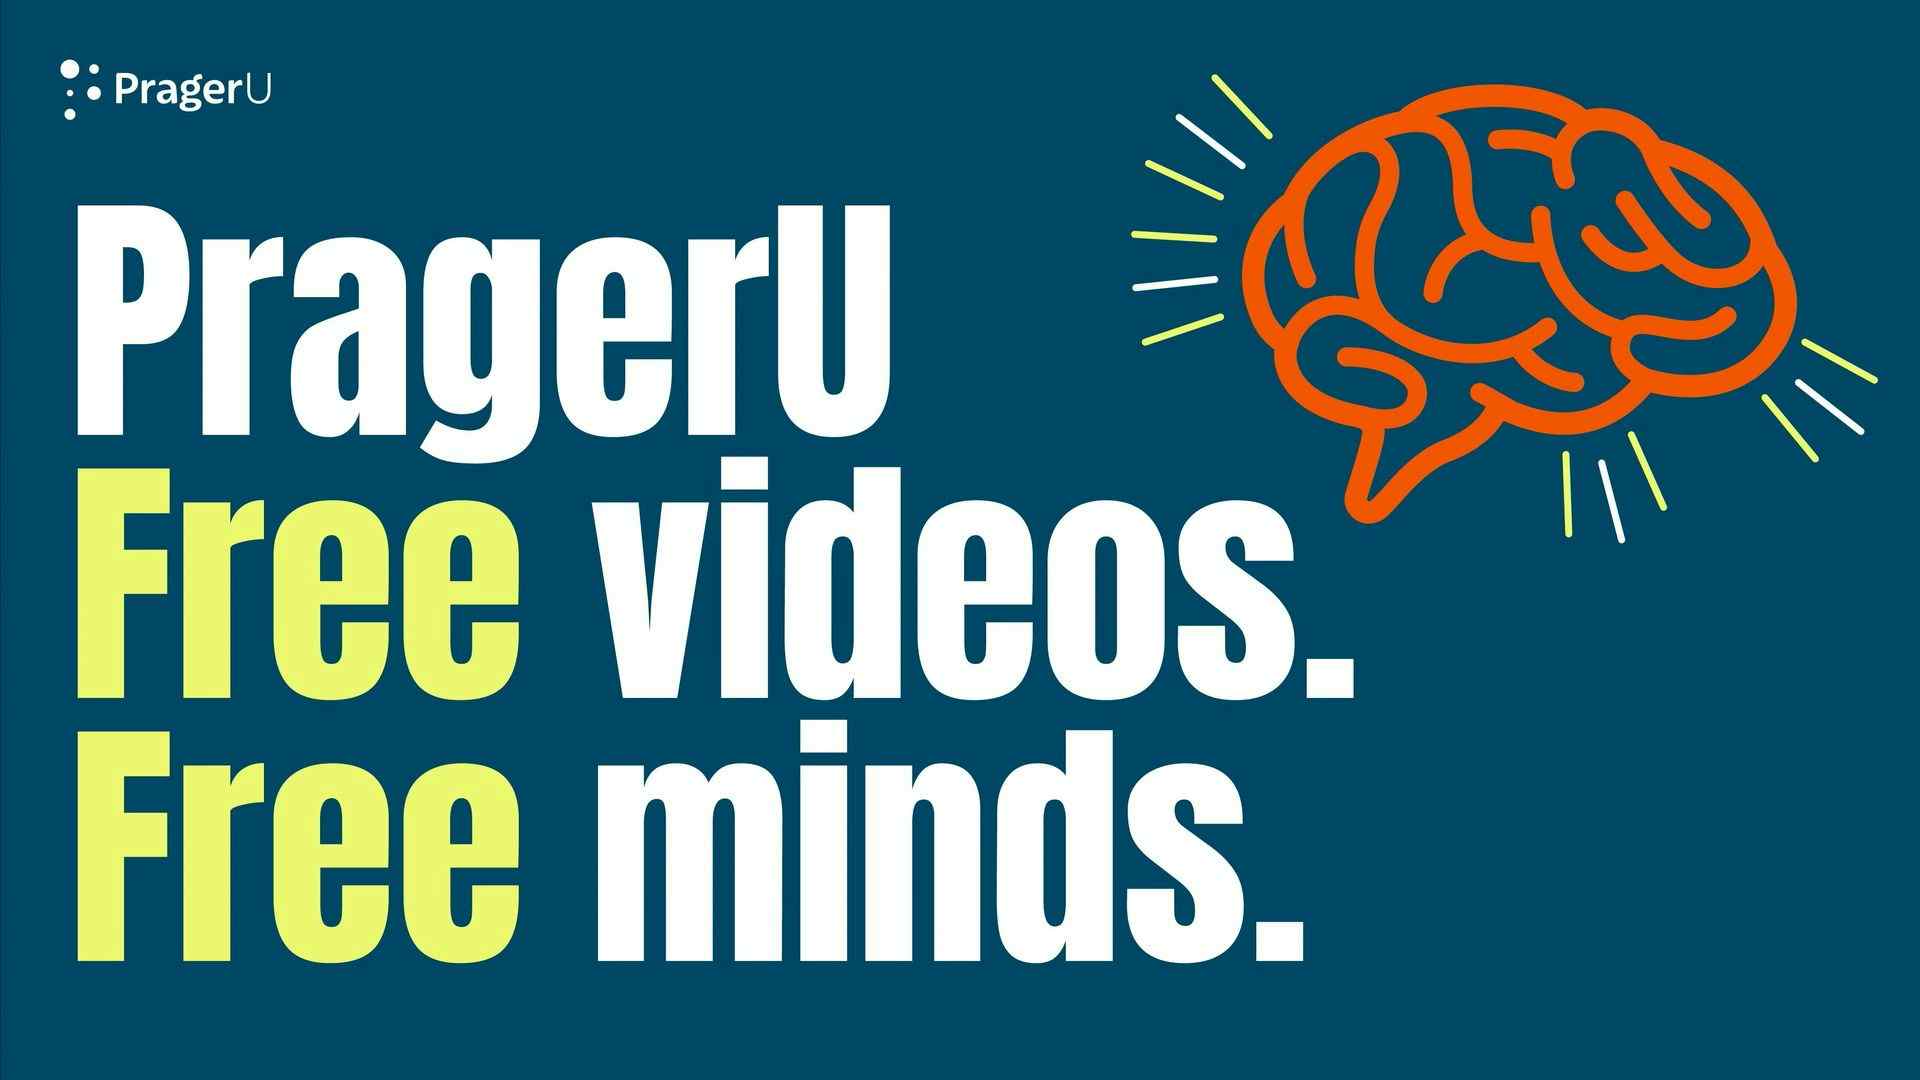 PragerU: Free Videos. Free Minds.